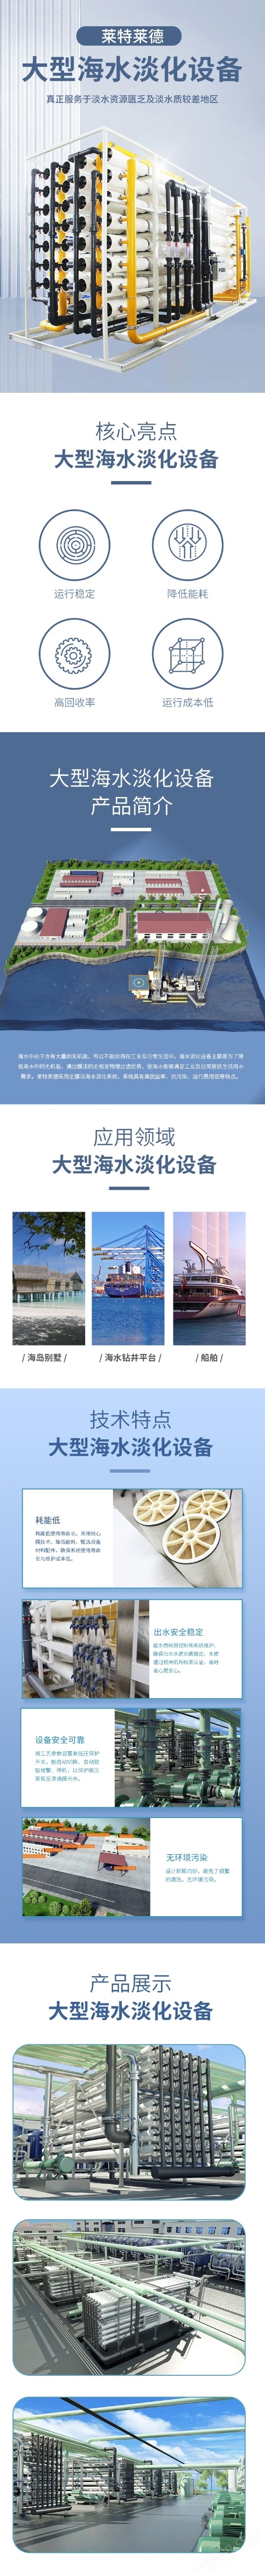 广州反渗透海水淡化设备应用